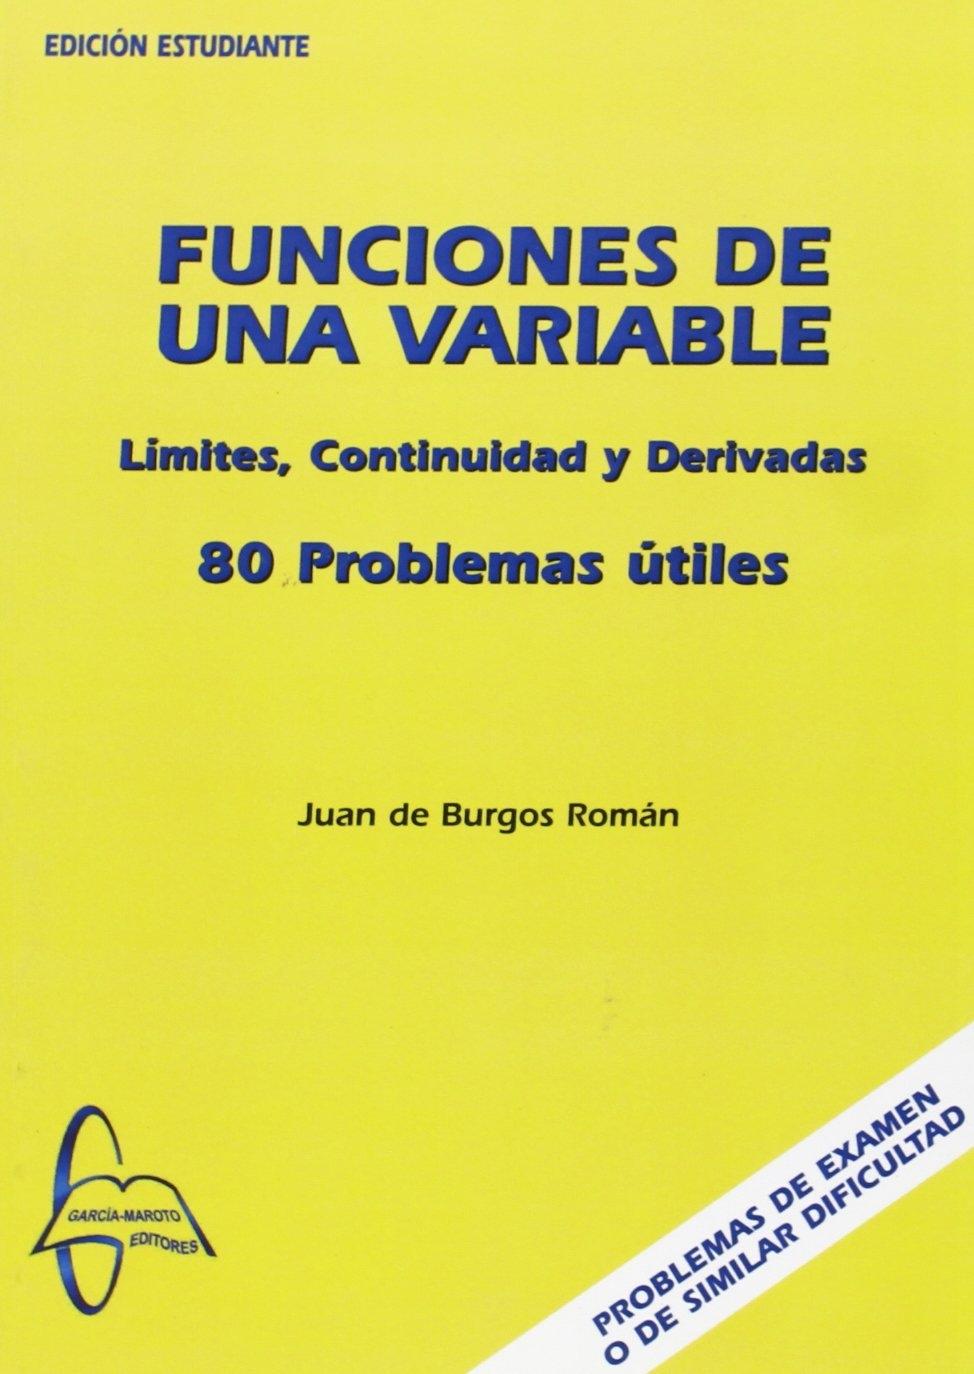 FUNCIONES DE UNA VARIABLE "80 PROBLEMAS ÚTILES". 